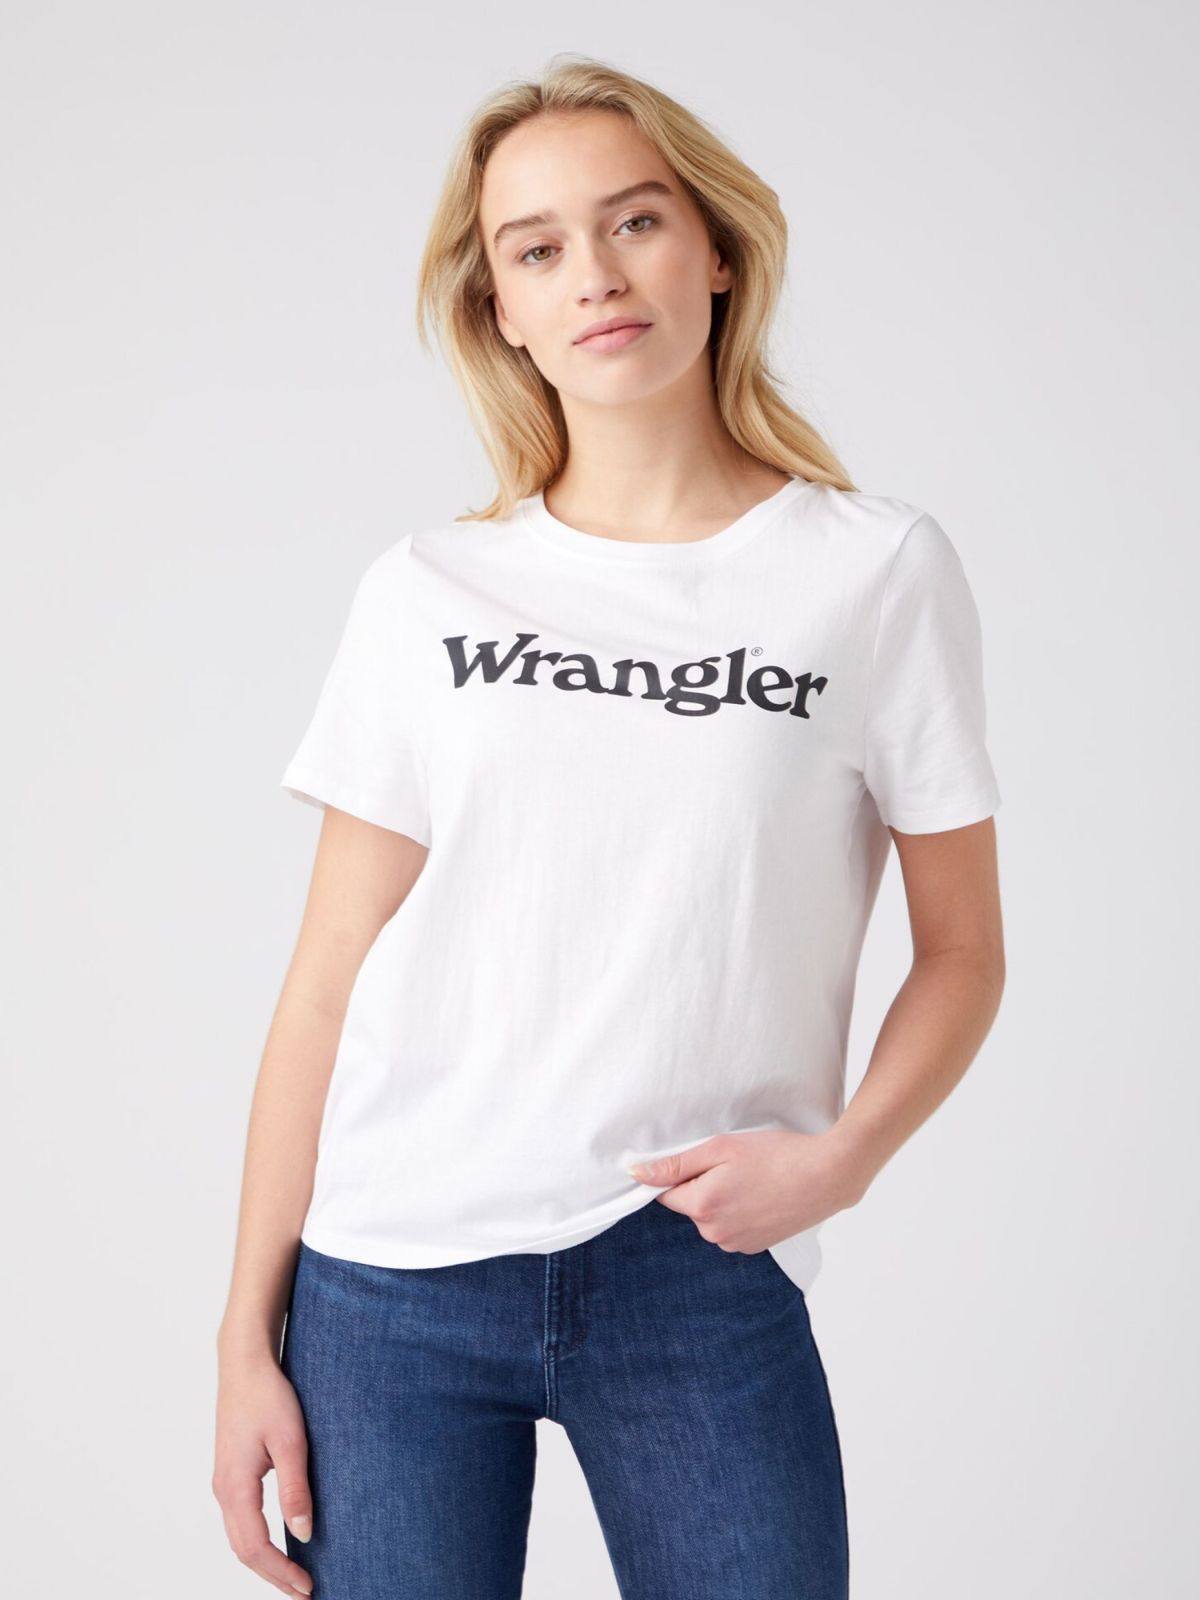  טי שירט עם הדפס לוגו של WRANGLER